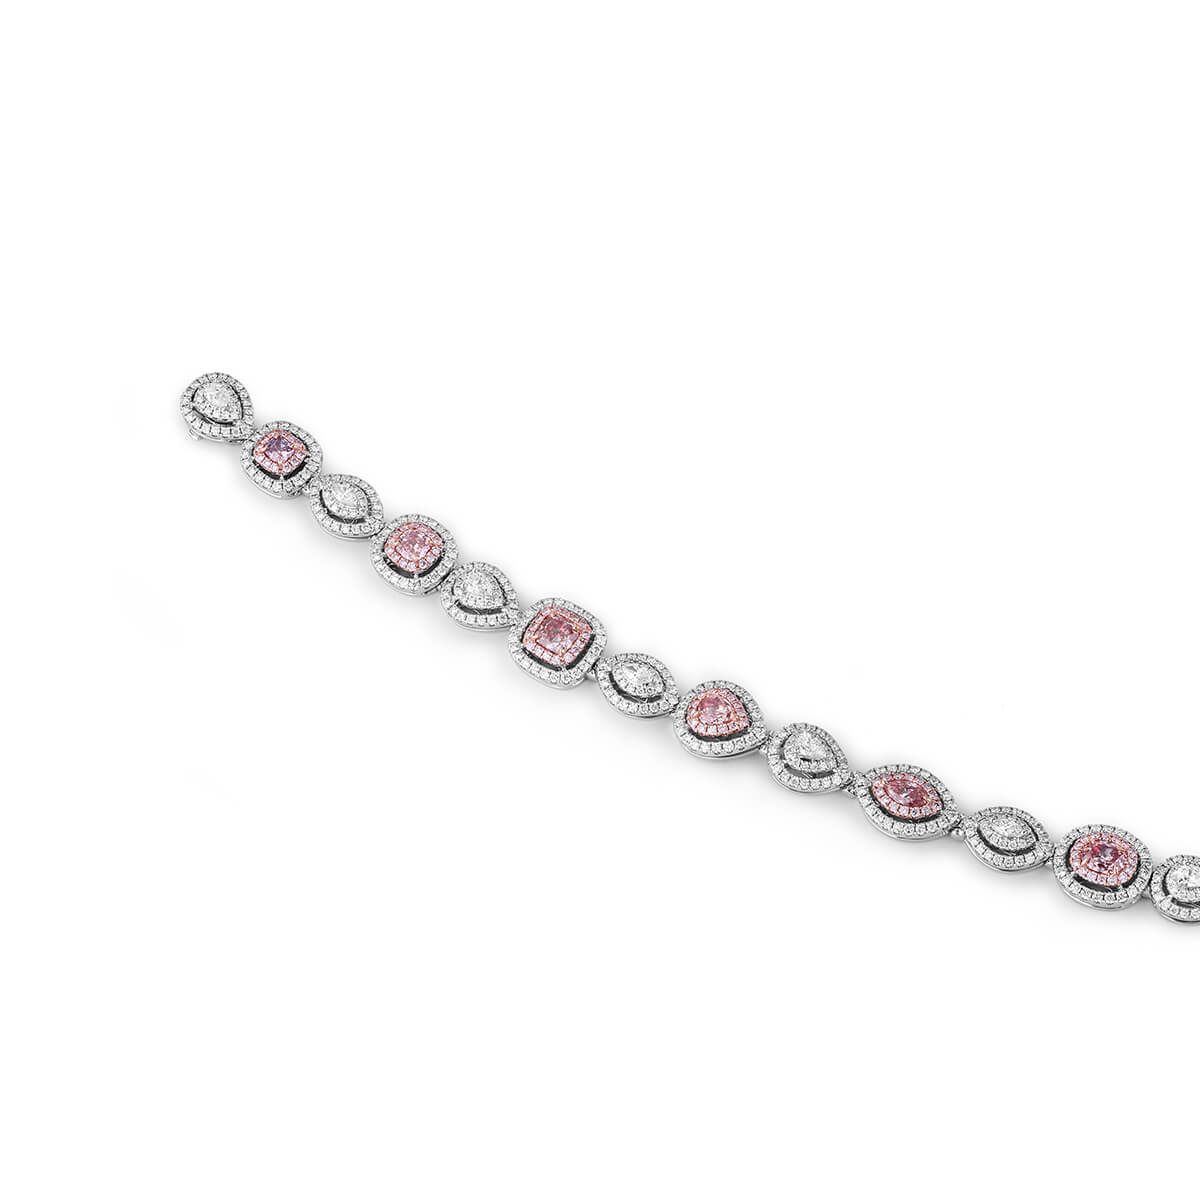 Fancy Orangy Pink Diamond Bracelet, 6.48 Ct. TW, Pear shape, GIA Certified, JCBF05387386